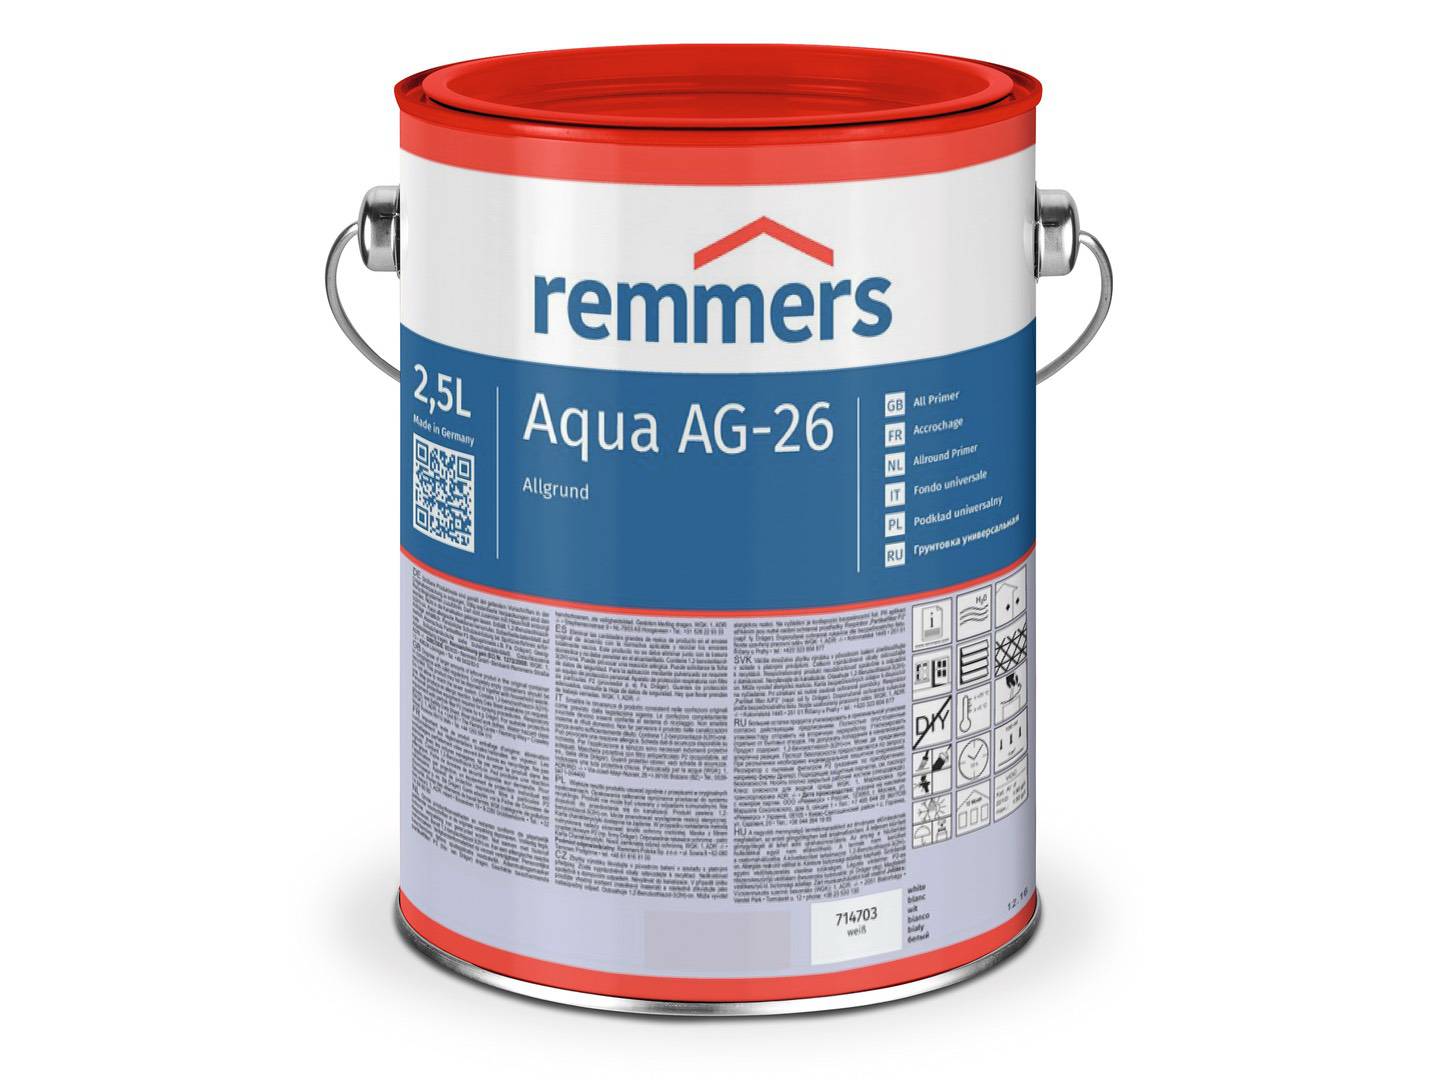 REMMERS Aqua AG-26-Allgrund weiß 2,50 l